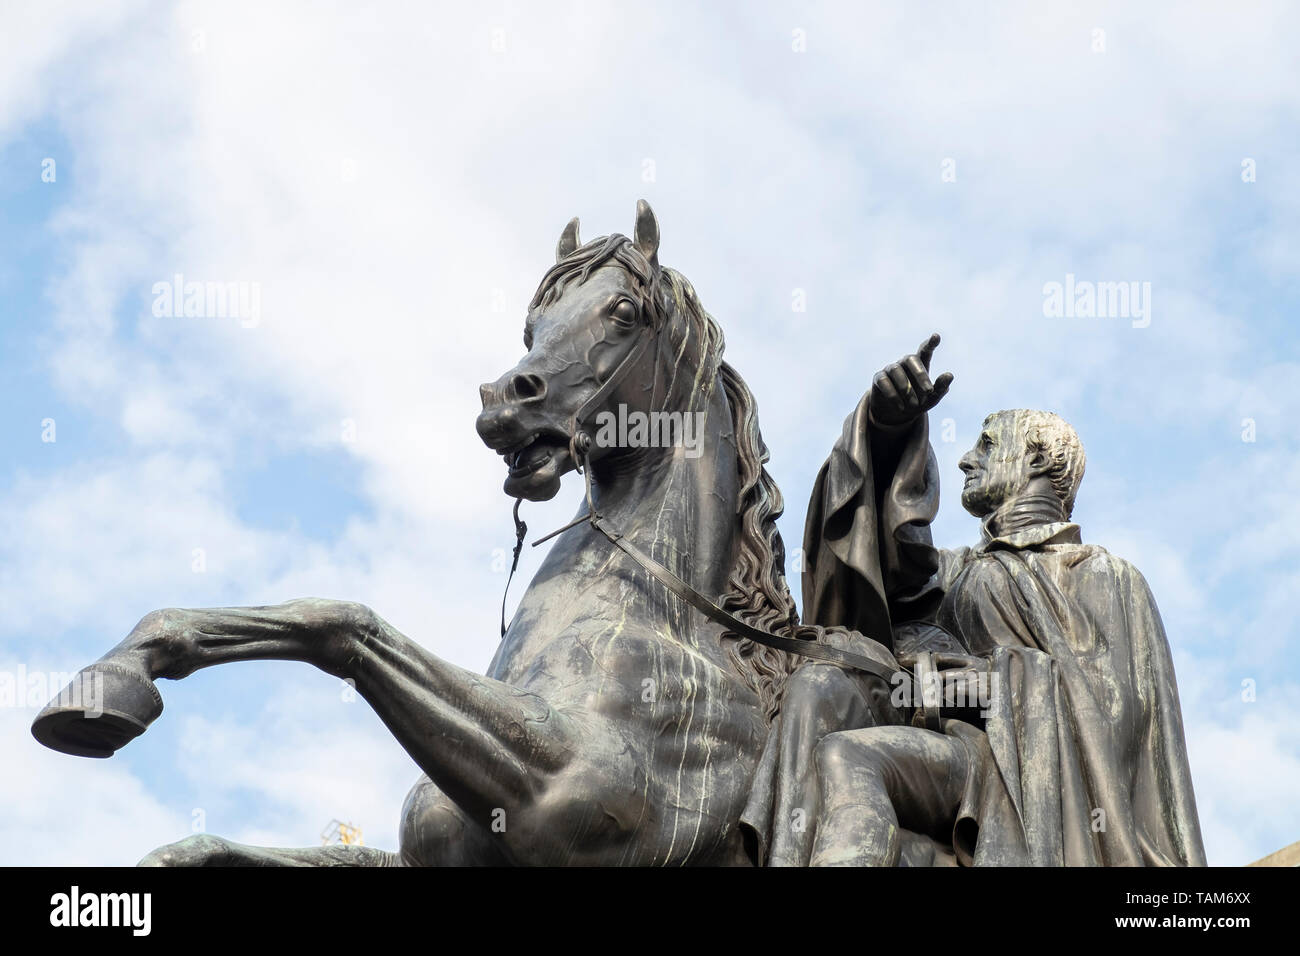 La statue du duc de Wellington (1852) s'inscrire à l'Assemblée, Princes Street, Edinburgh, Ecosse, Royaume-Uni. Wellington est monté sur son cheval favori, Copenhague. Banque D'Images